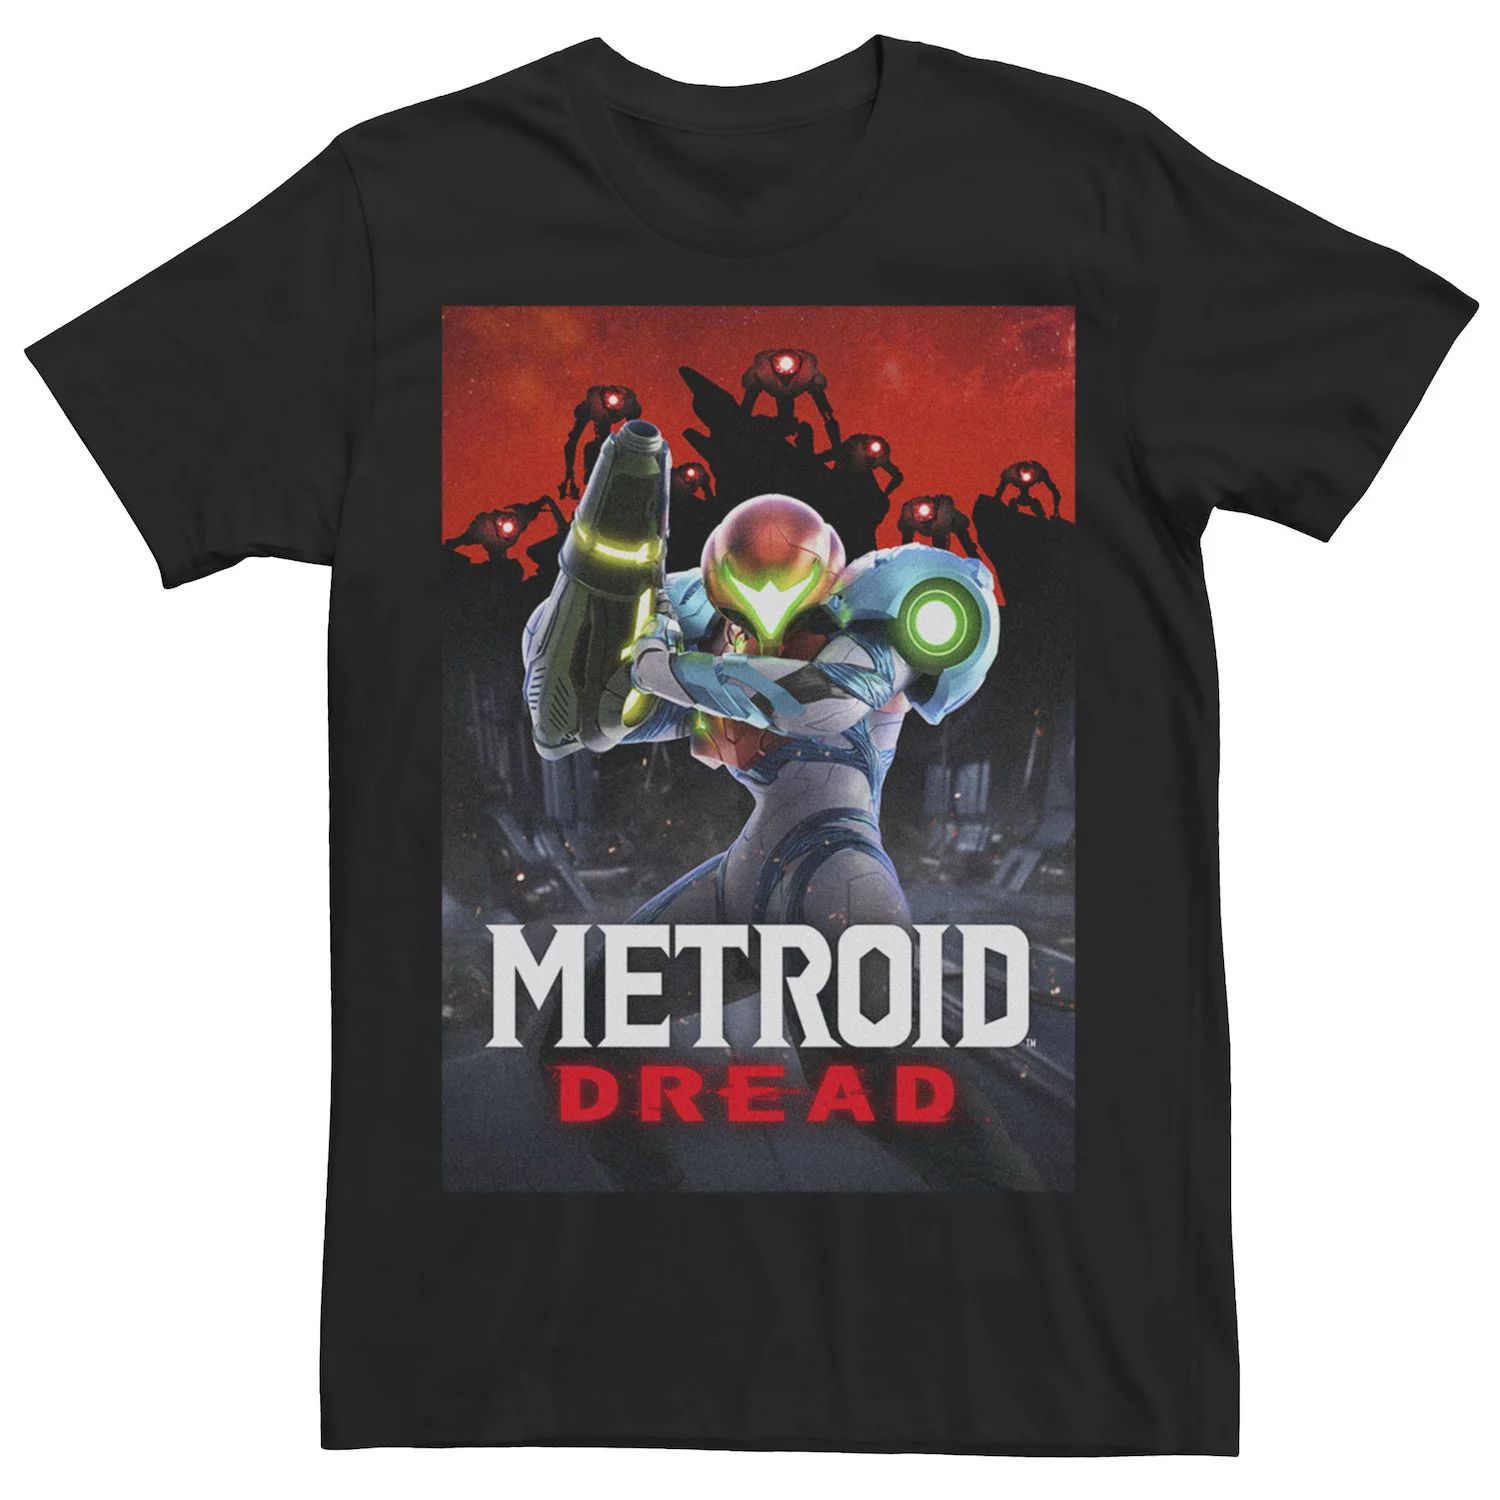 Мужская футболка с плакатом Metroid Prime Dread Battle Licensed Character